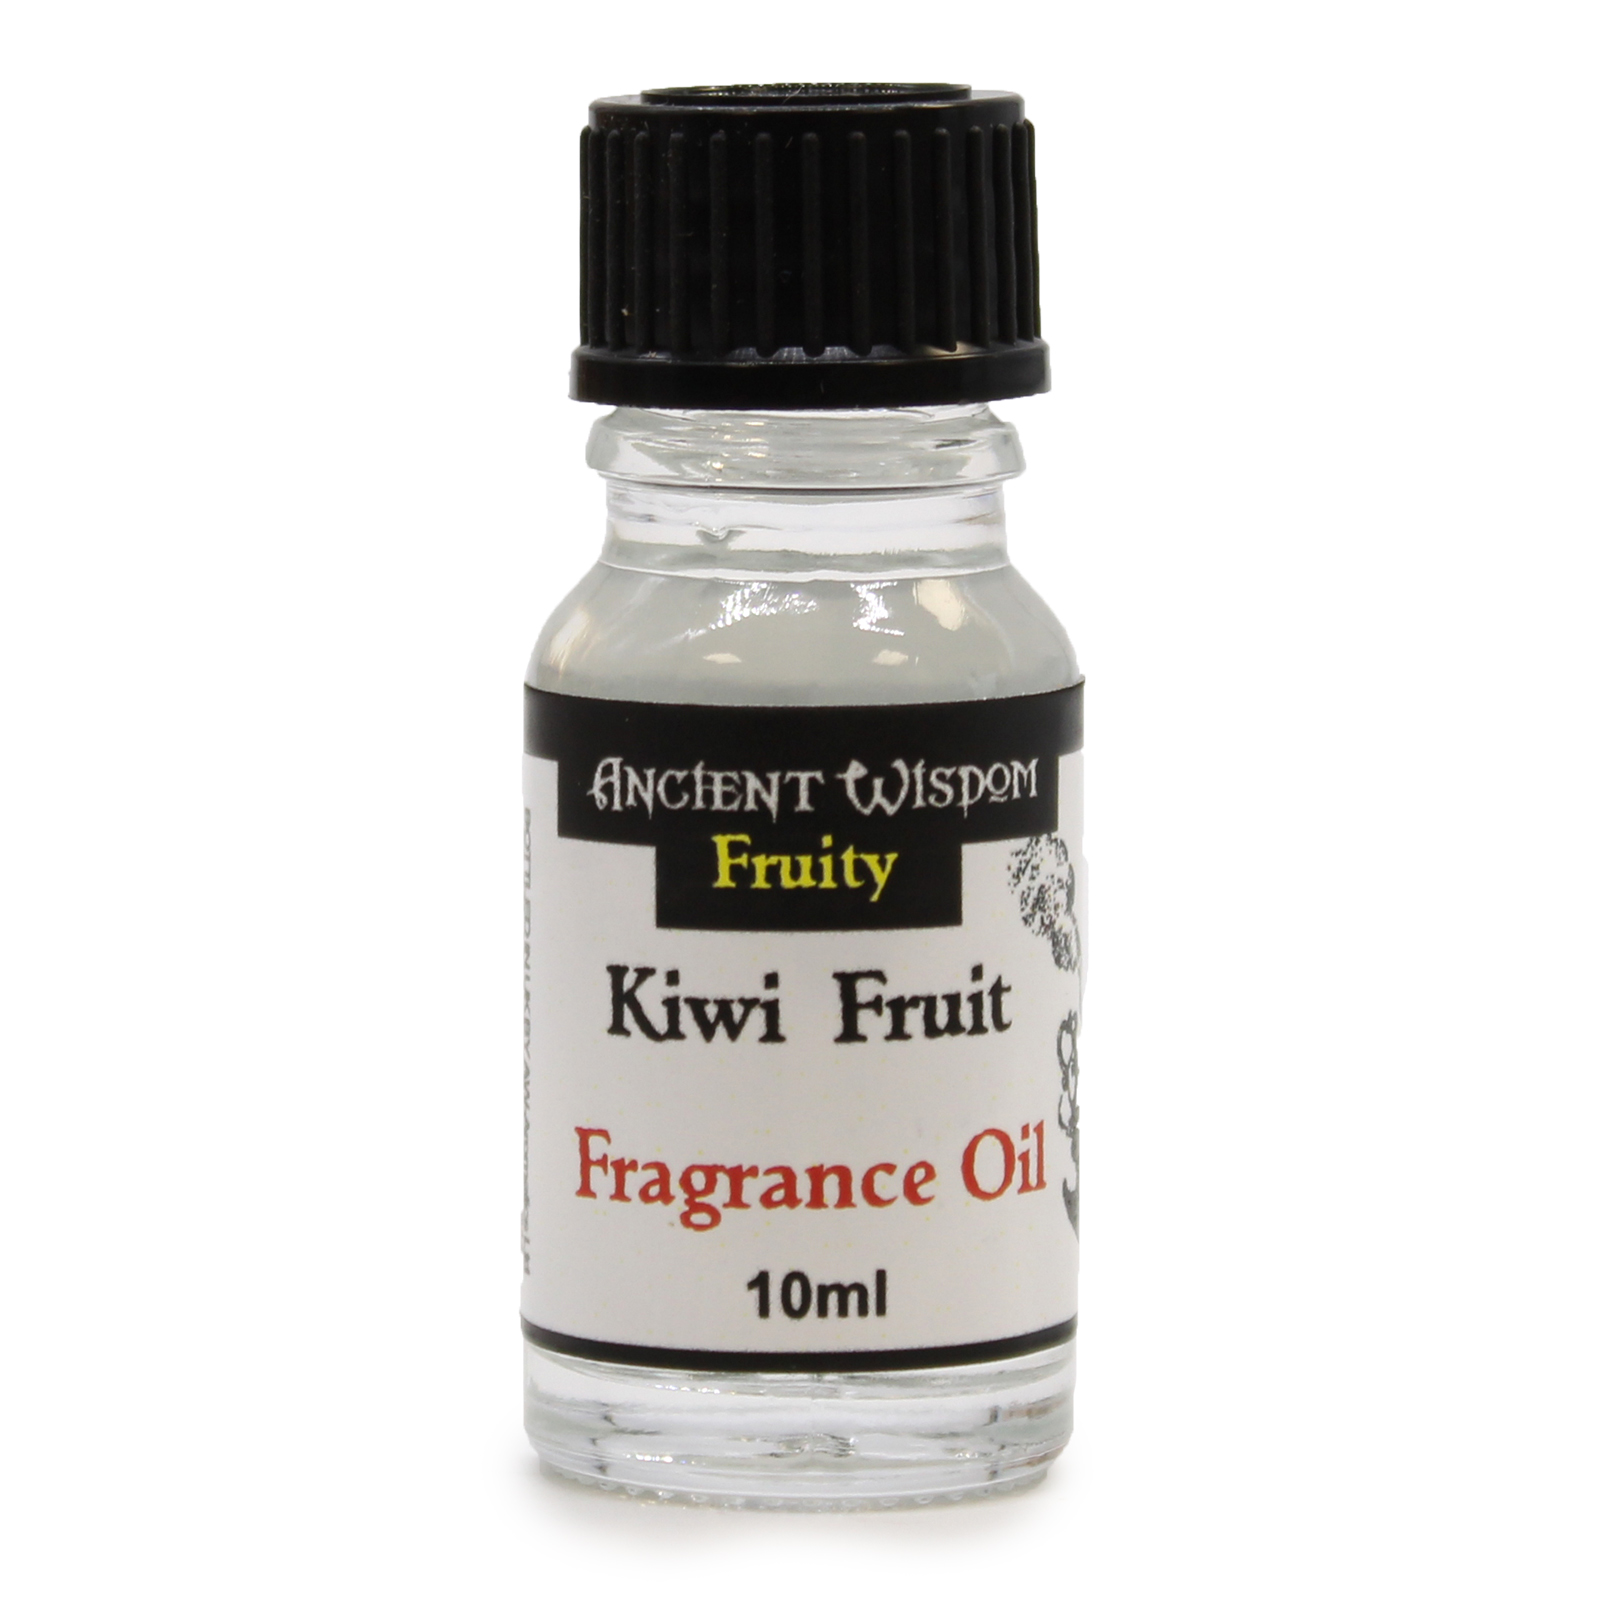 2 x 10ml Kiwi Fruit Fragrance Oil Bottles